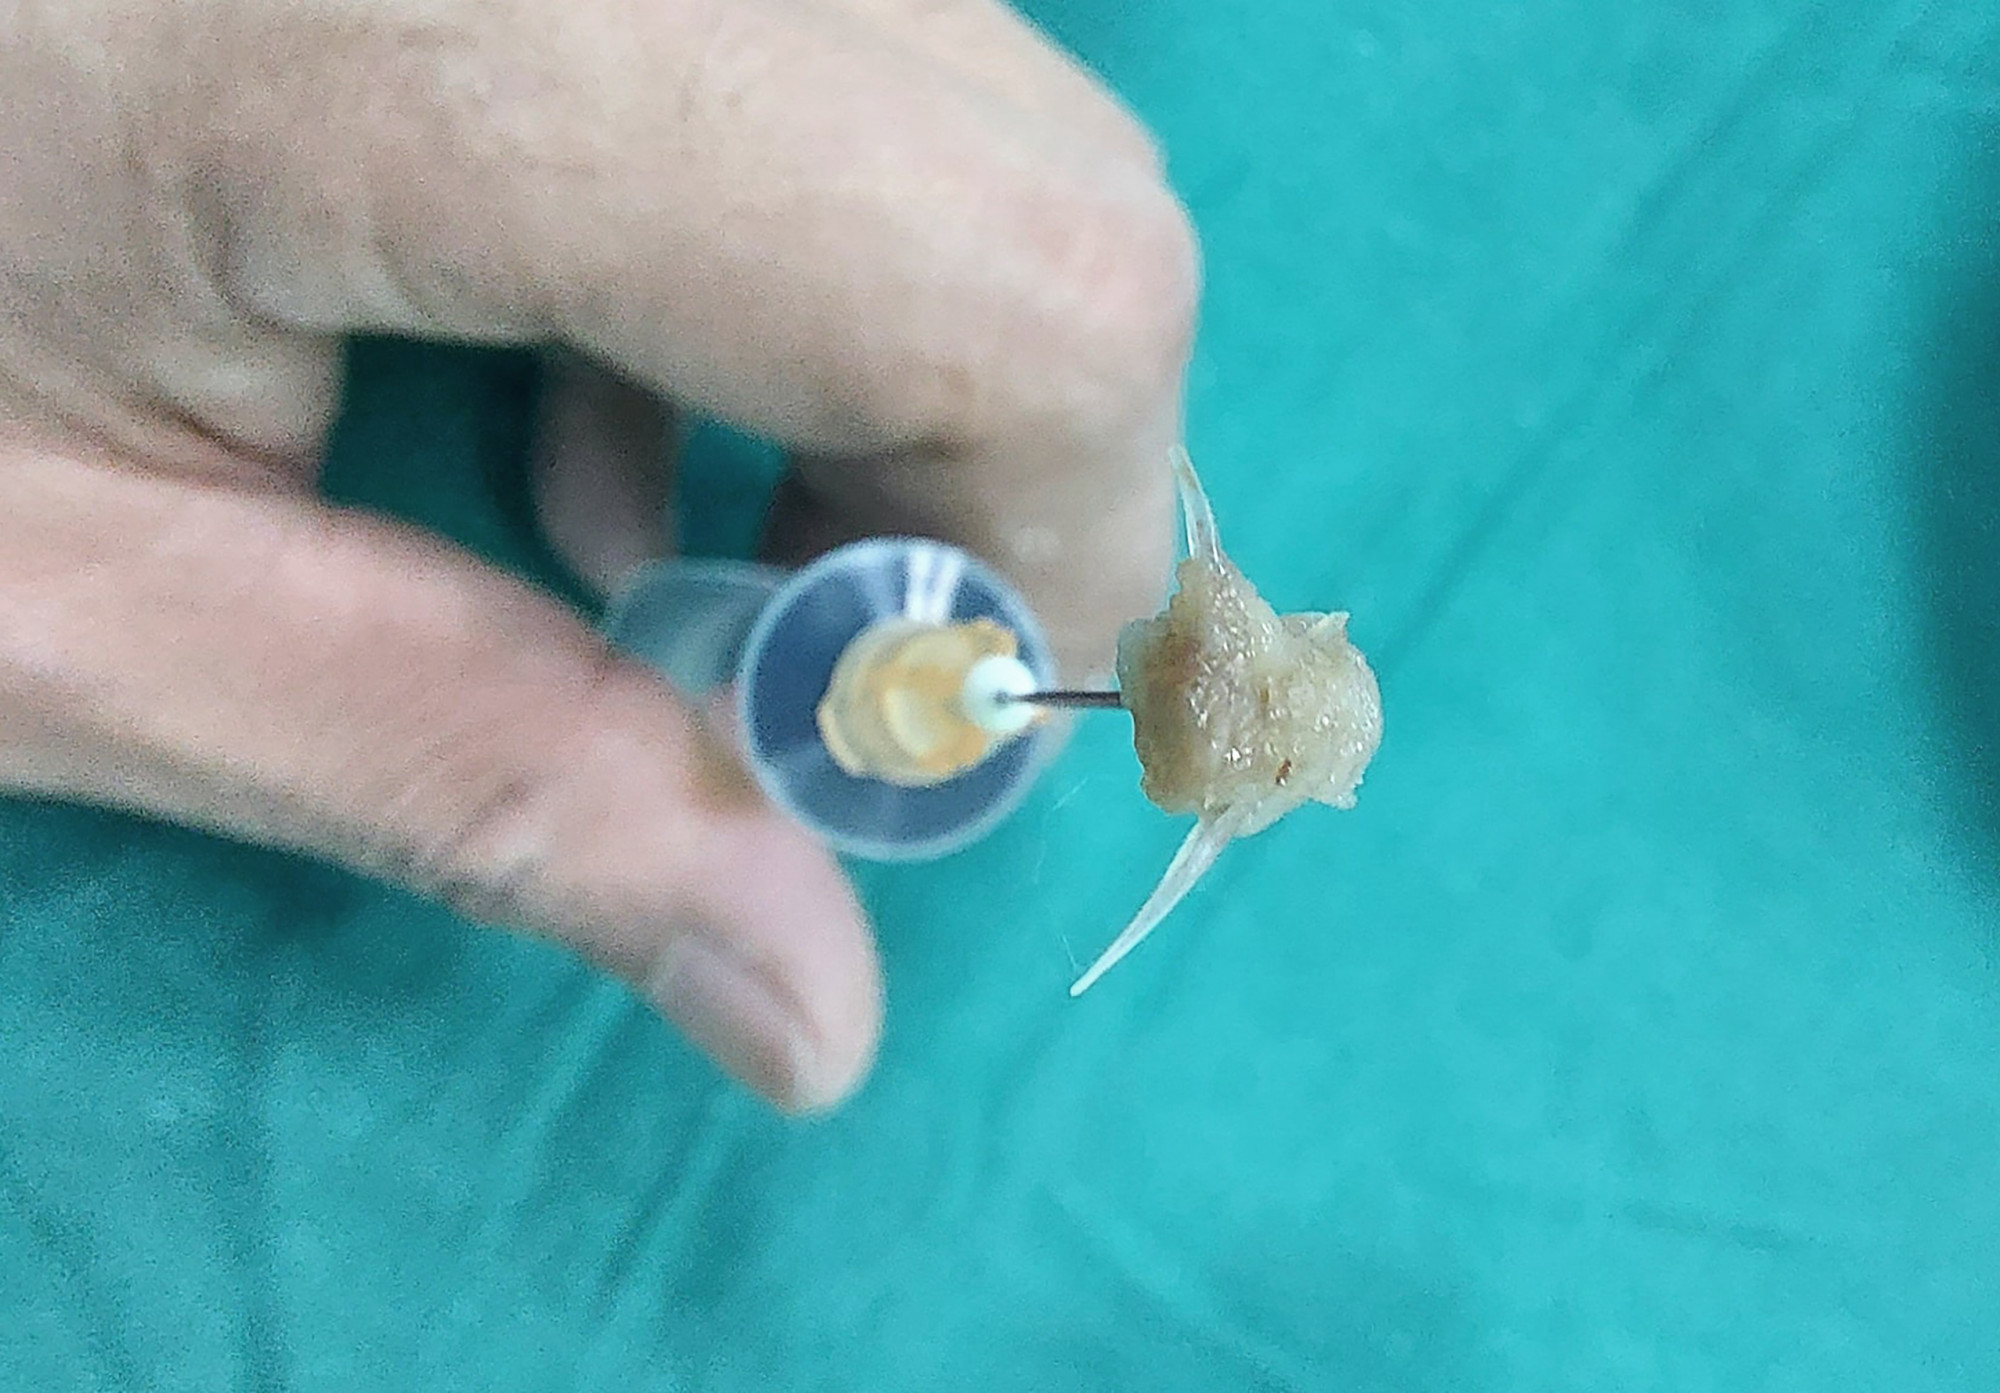 Mảnh xương cá sắc nhọn được lấy ra khỏi đường thở bé 2 tuổi